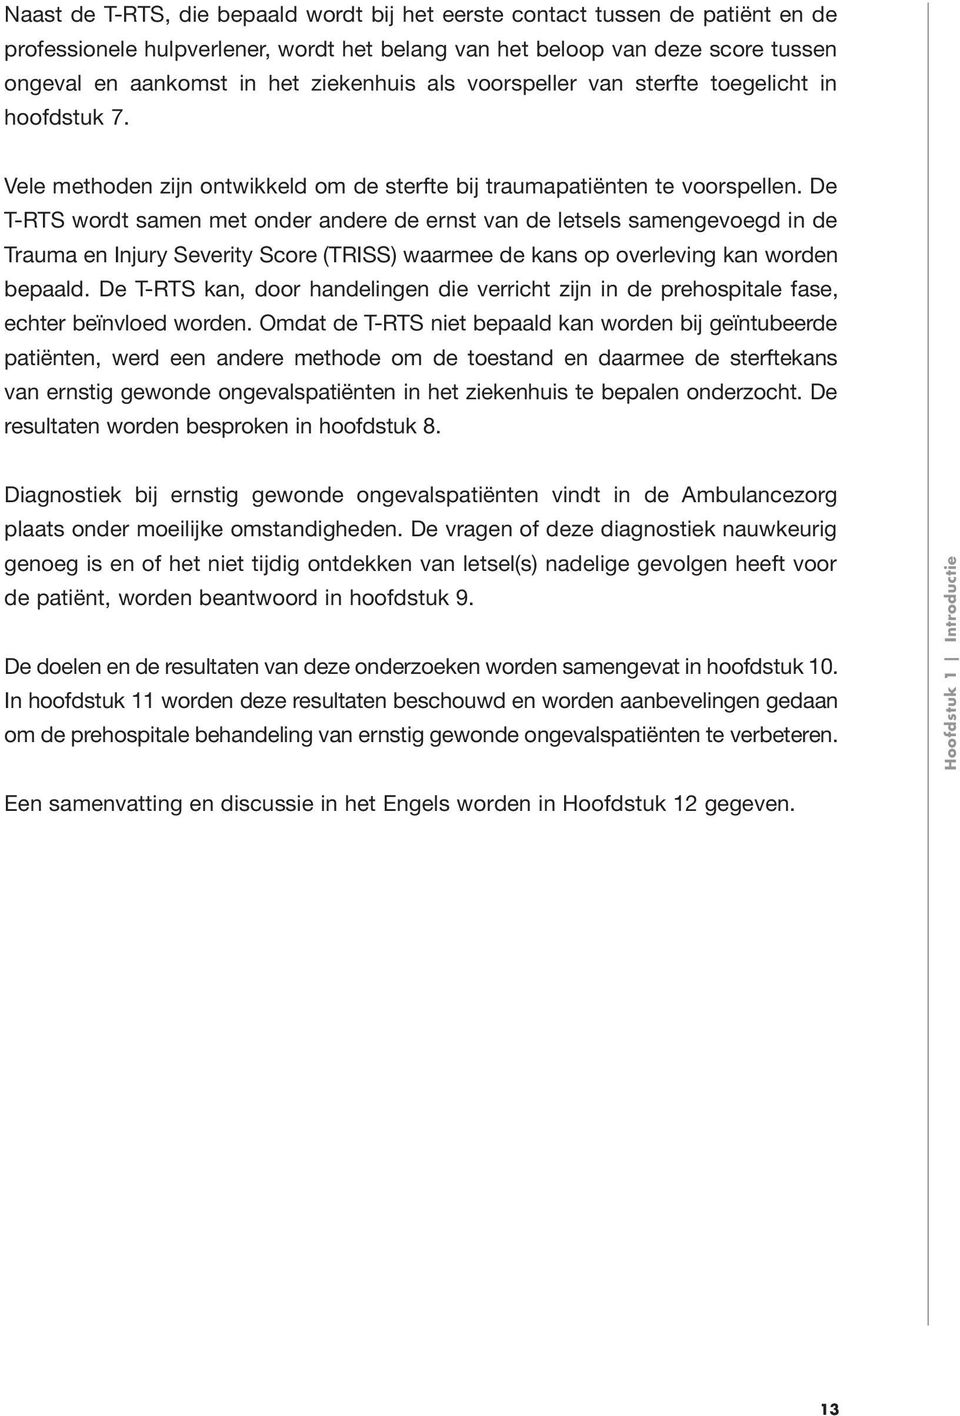 De T-RTS wordt samen met onder andere de ernst van de letsels samengevoegd in de Trauma en Injury Severity Score (TRISS) waarmee de kans op overleving kan worden bepaald.